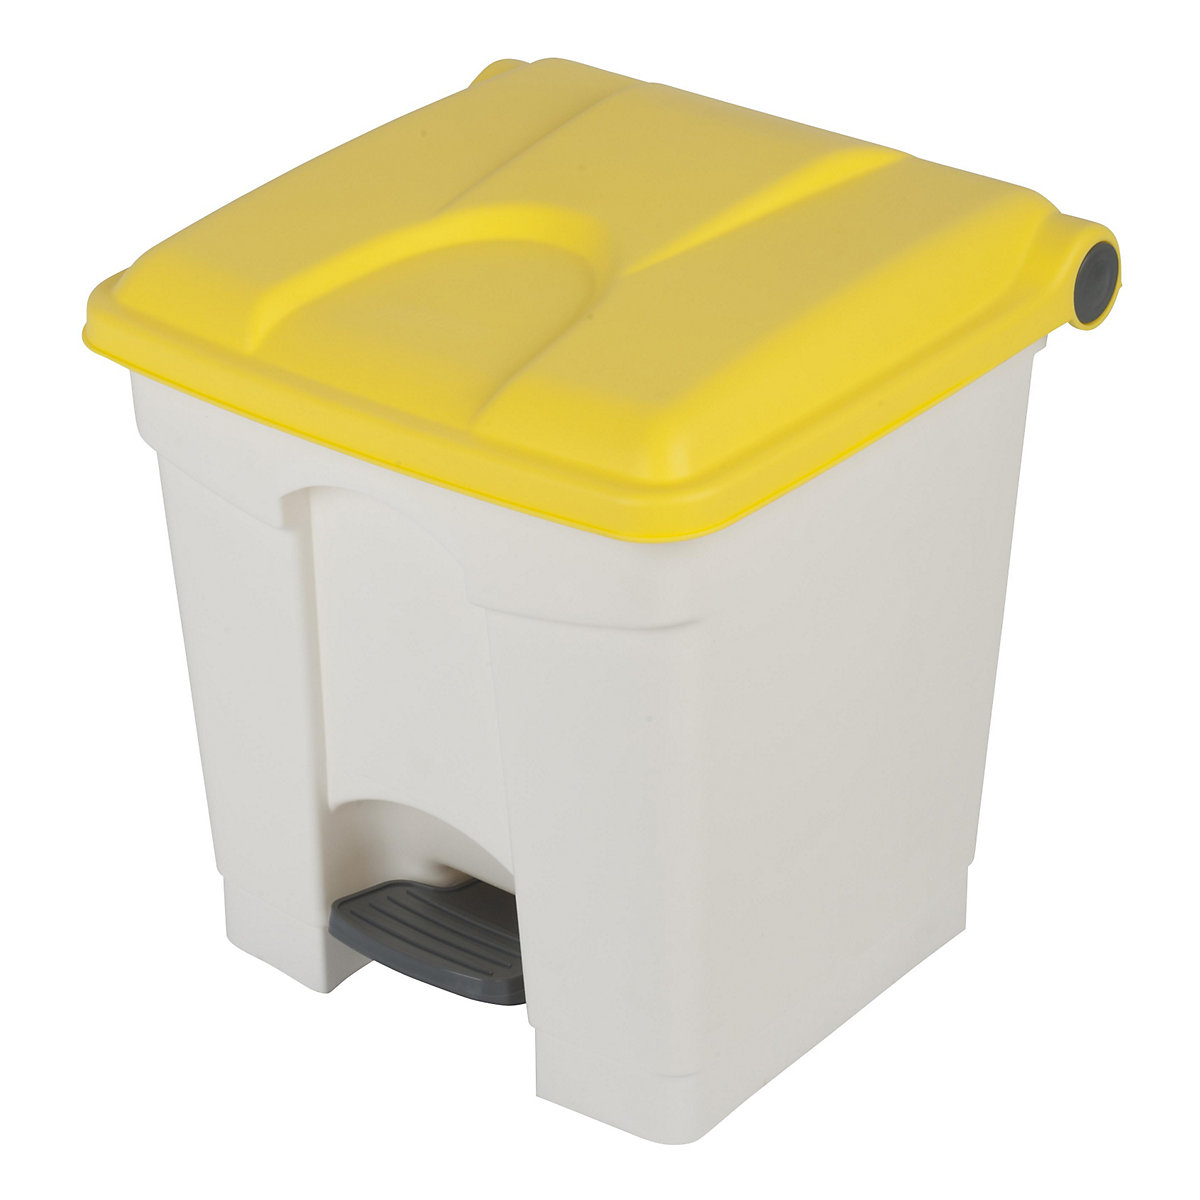 EUROKRAFTbasic – Nádoba na odpad s pedálem, objem 30 l, š x v x h 410 x 435 x 400 mm, bílá, žluté víko